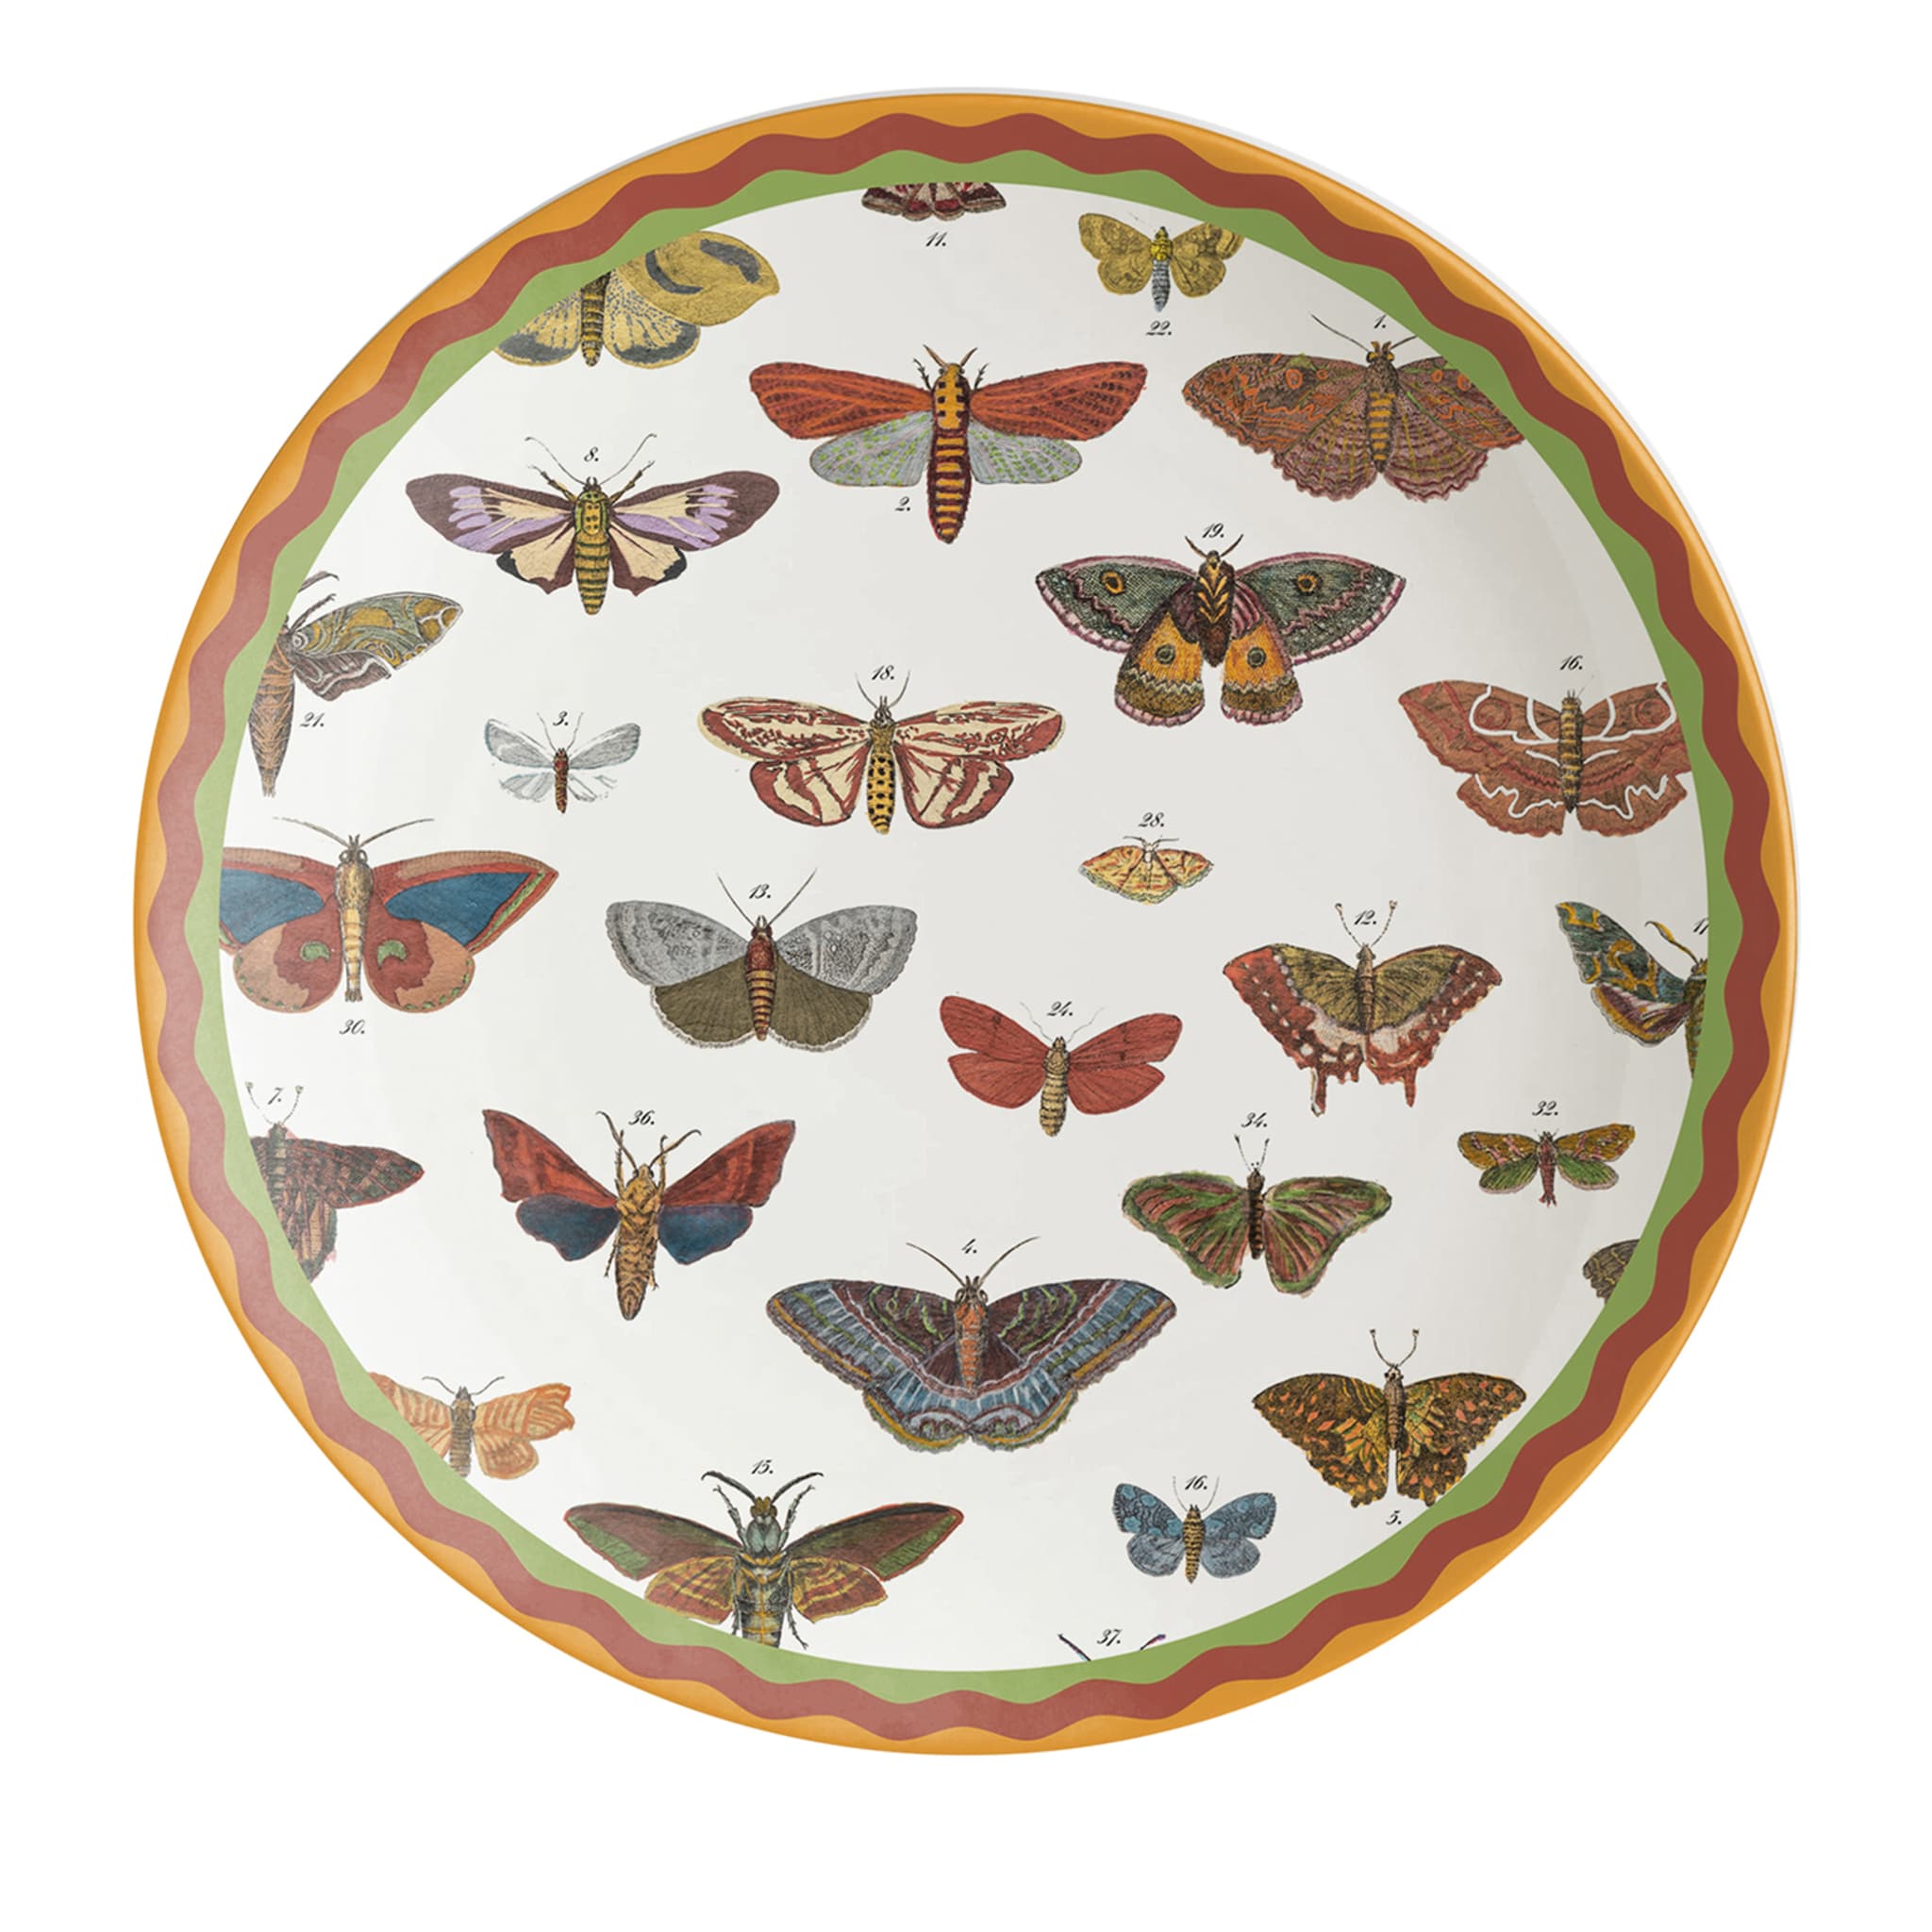 Cabinet de Curiosités Butterflies Dinner Plate - Main view